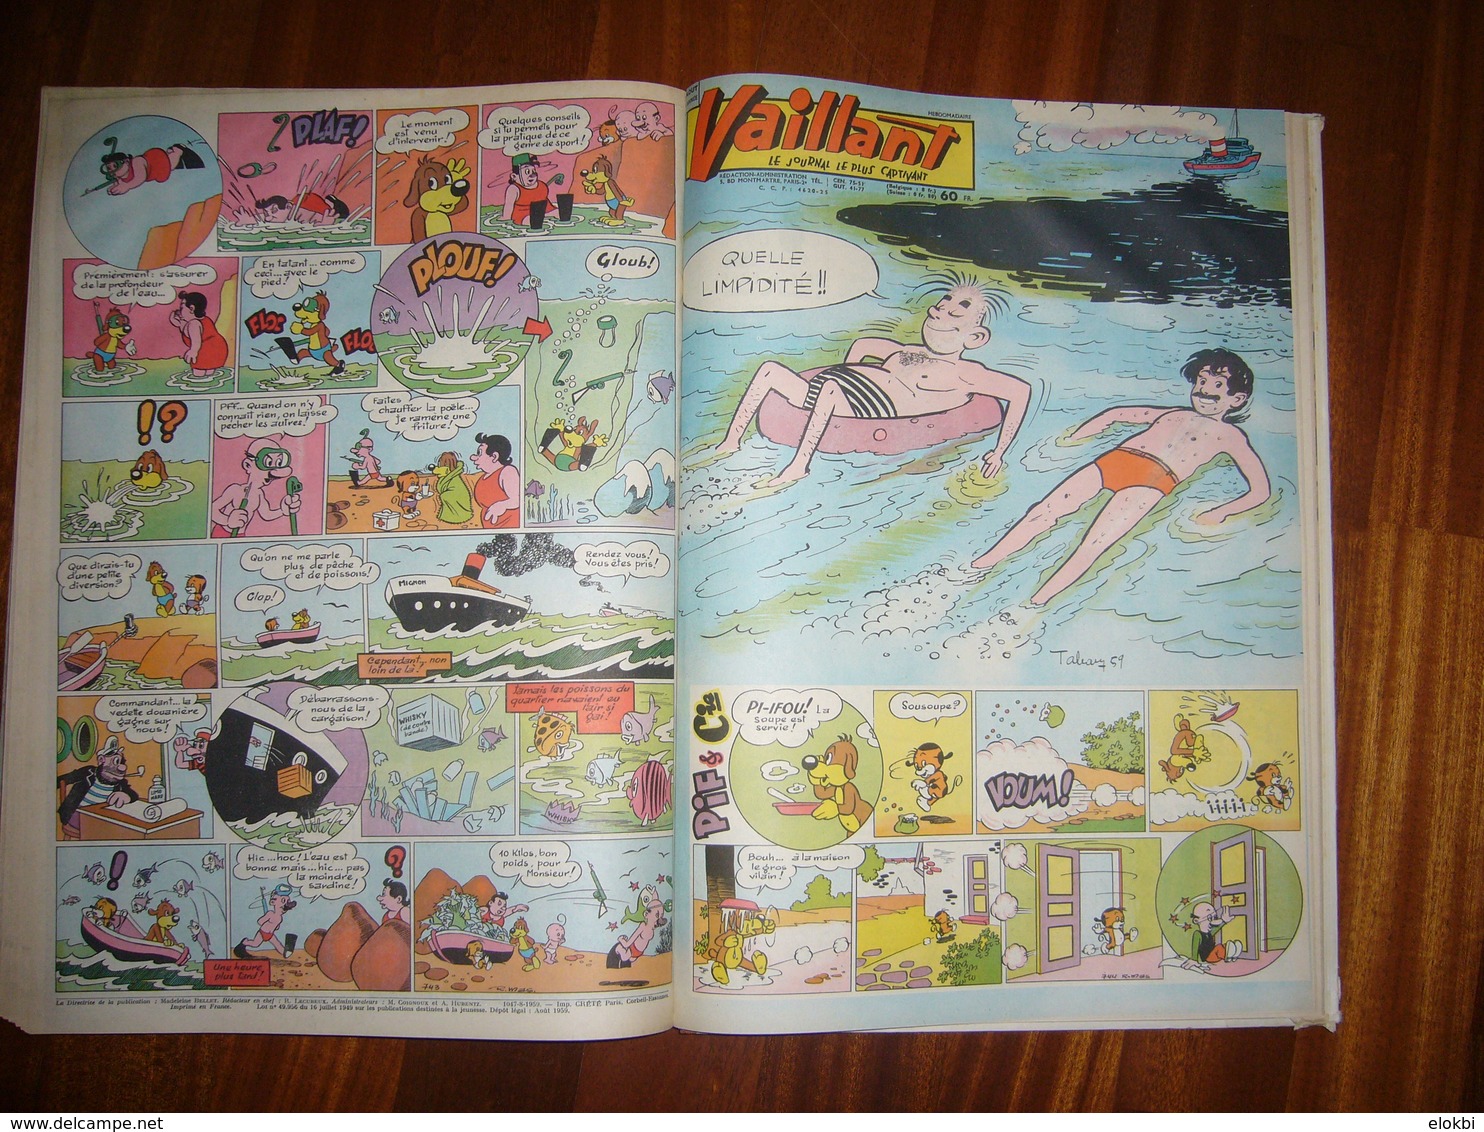 Album Vaillant n° 13 [Série n°2] Revues n° 733 à 745 incluses de l'année 1959 - Voir description détaillée